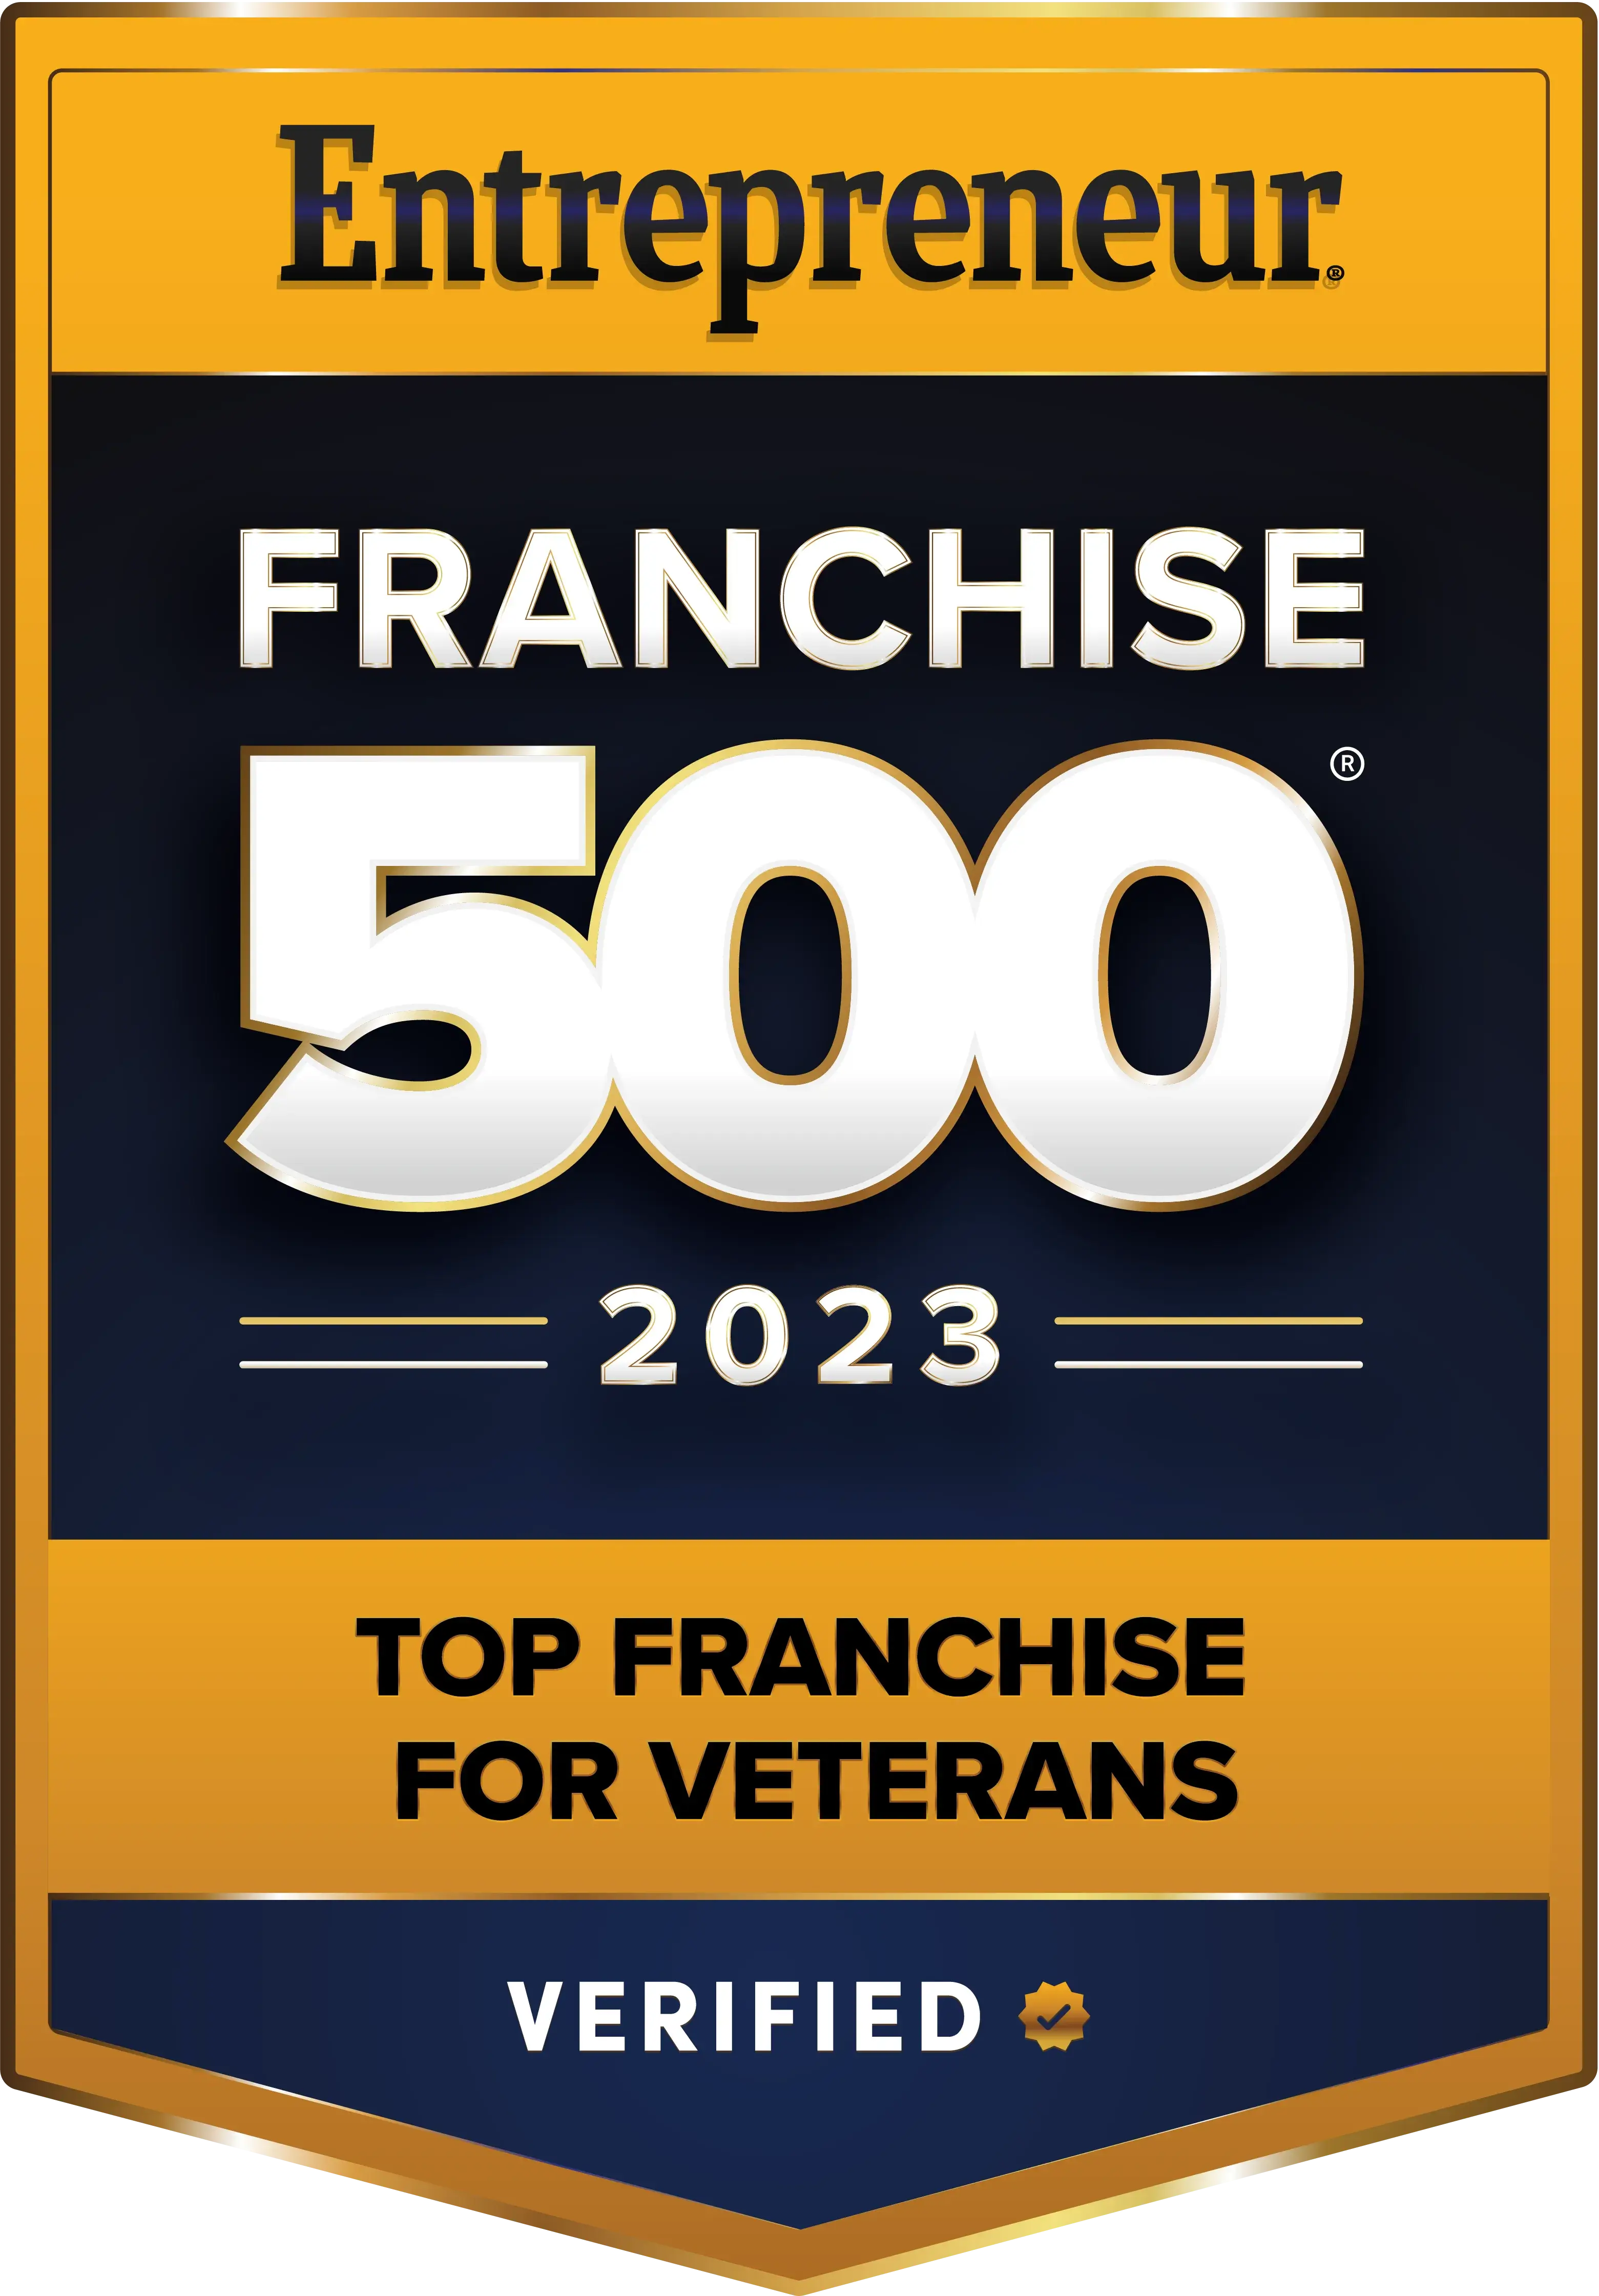 Entreprenuer Franchise 500 Top Franchise for Veterans -2023